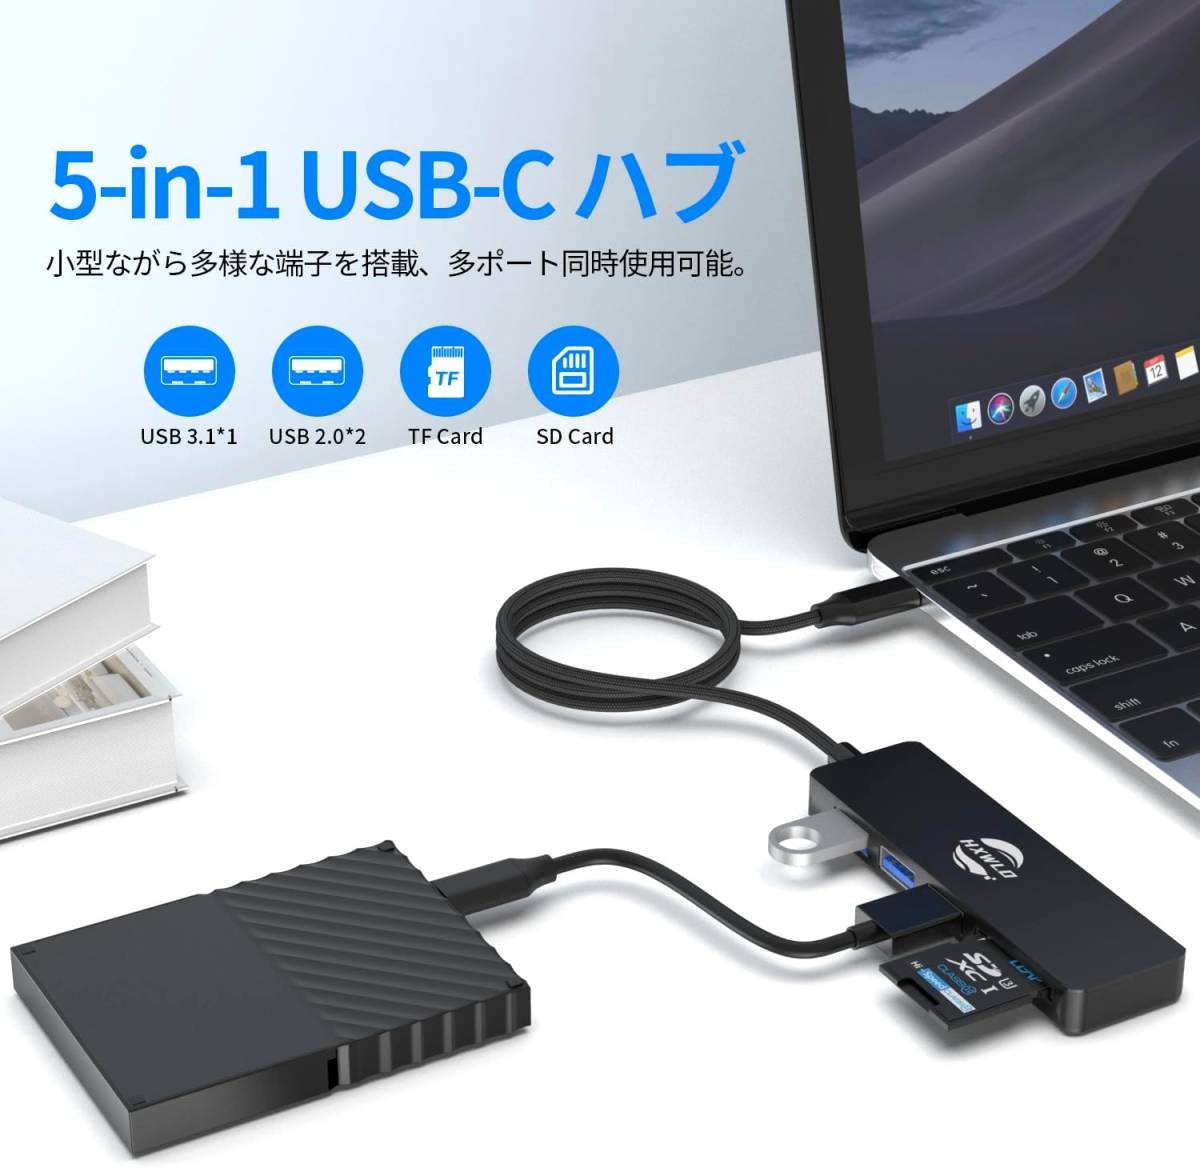 USB C ハブ アダプタ 5-in-1ドッキングステーション USBハブ Type-C 変換アダプタ